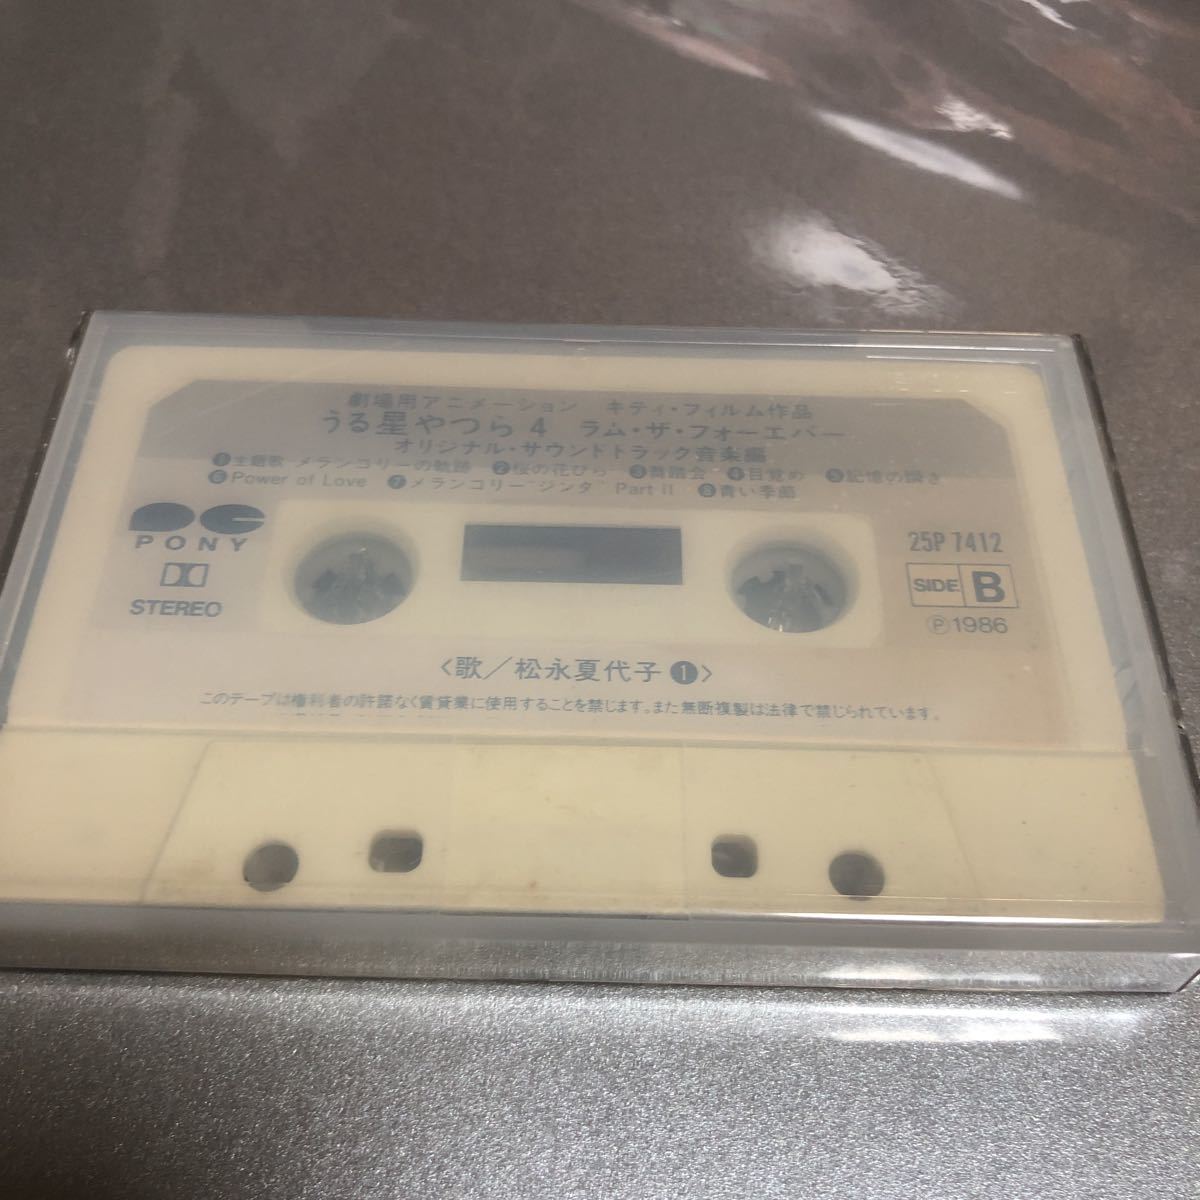  ограничение 1 название! редкий Urusei Yatsura 4 Ram The four ever кассетная лента.